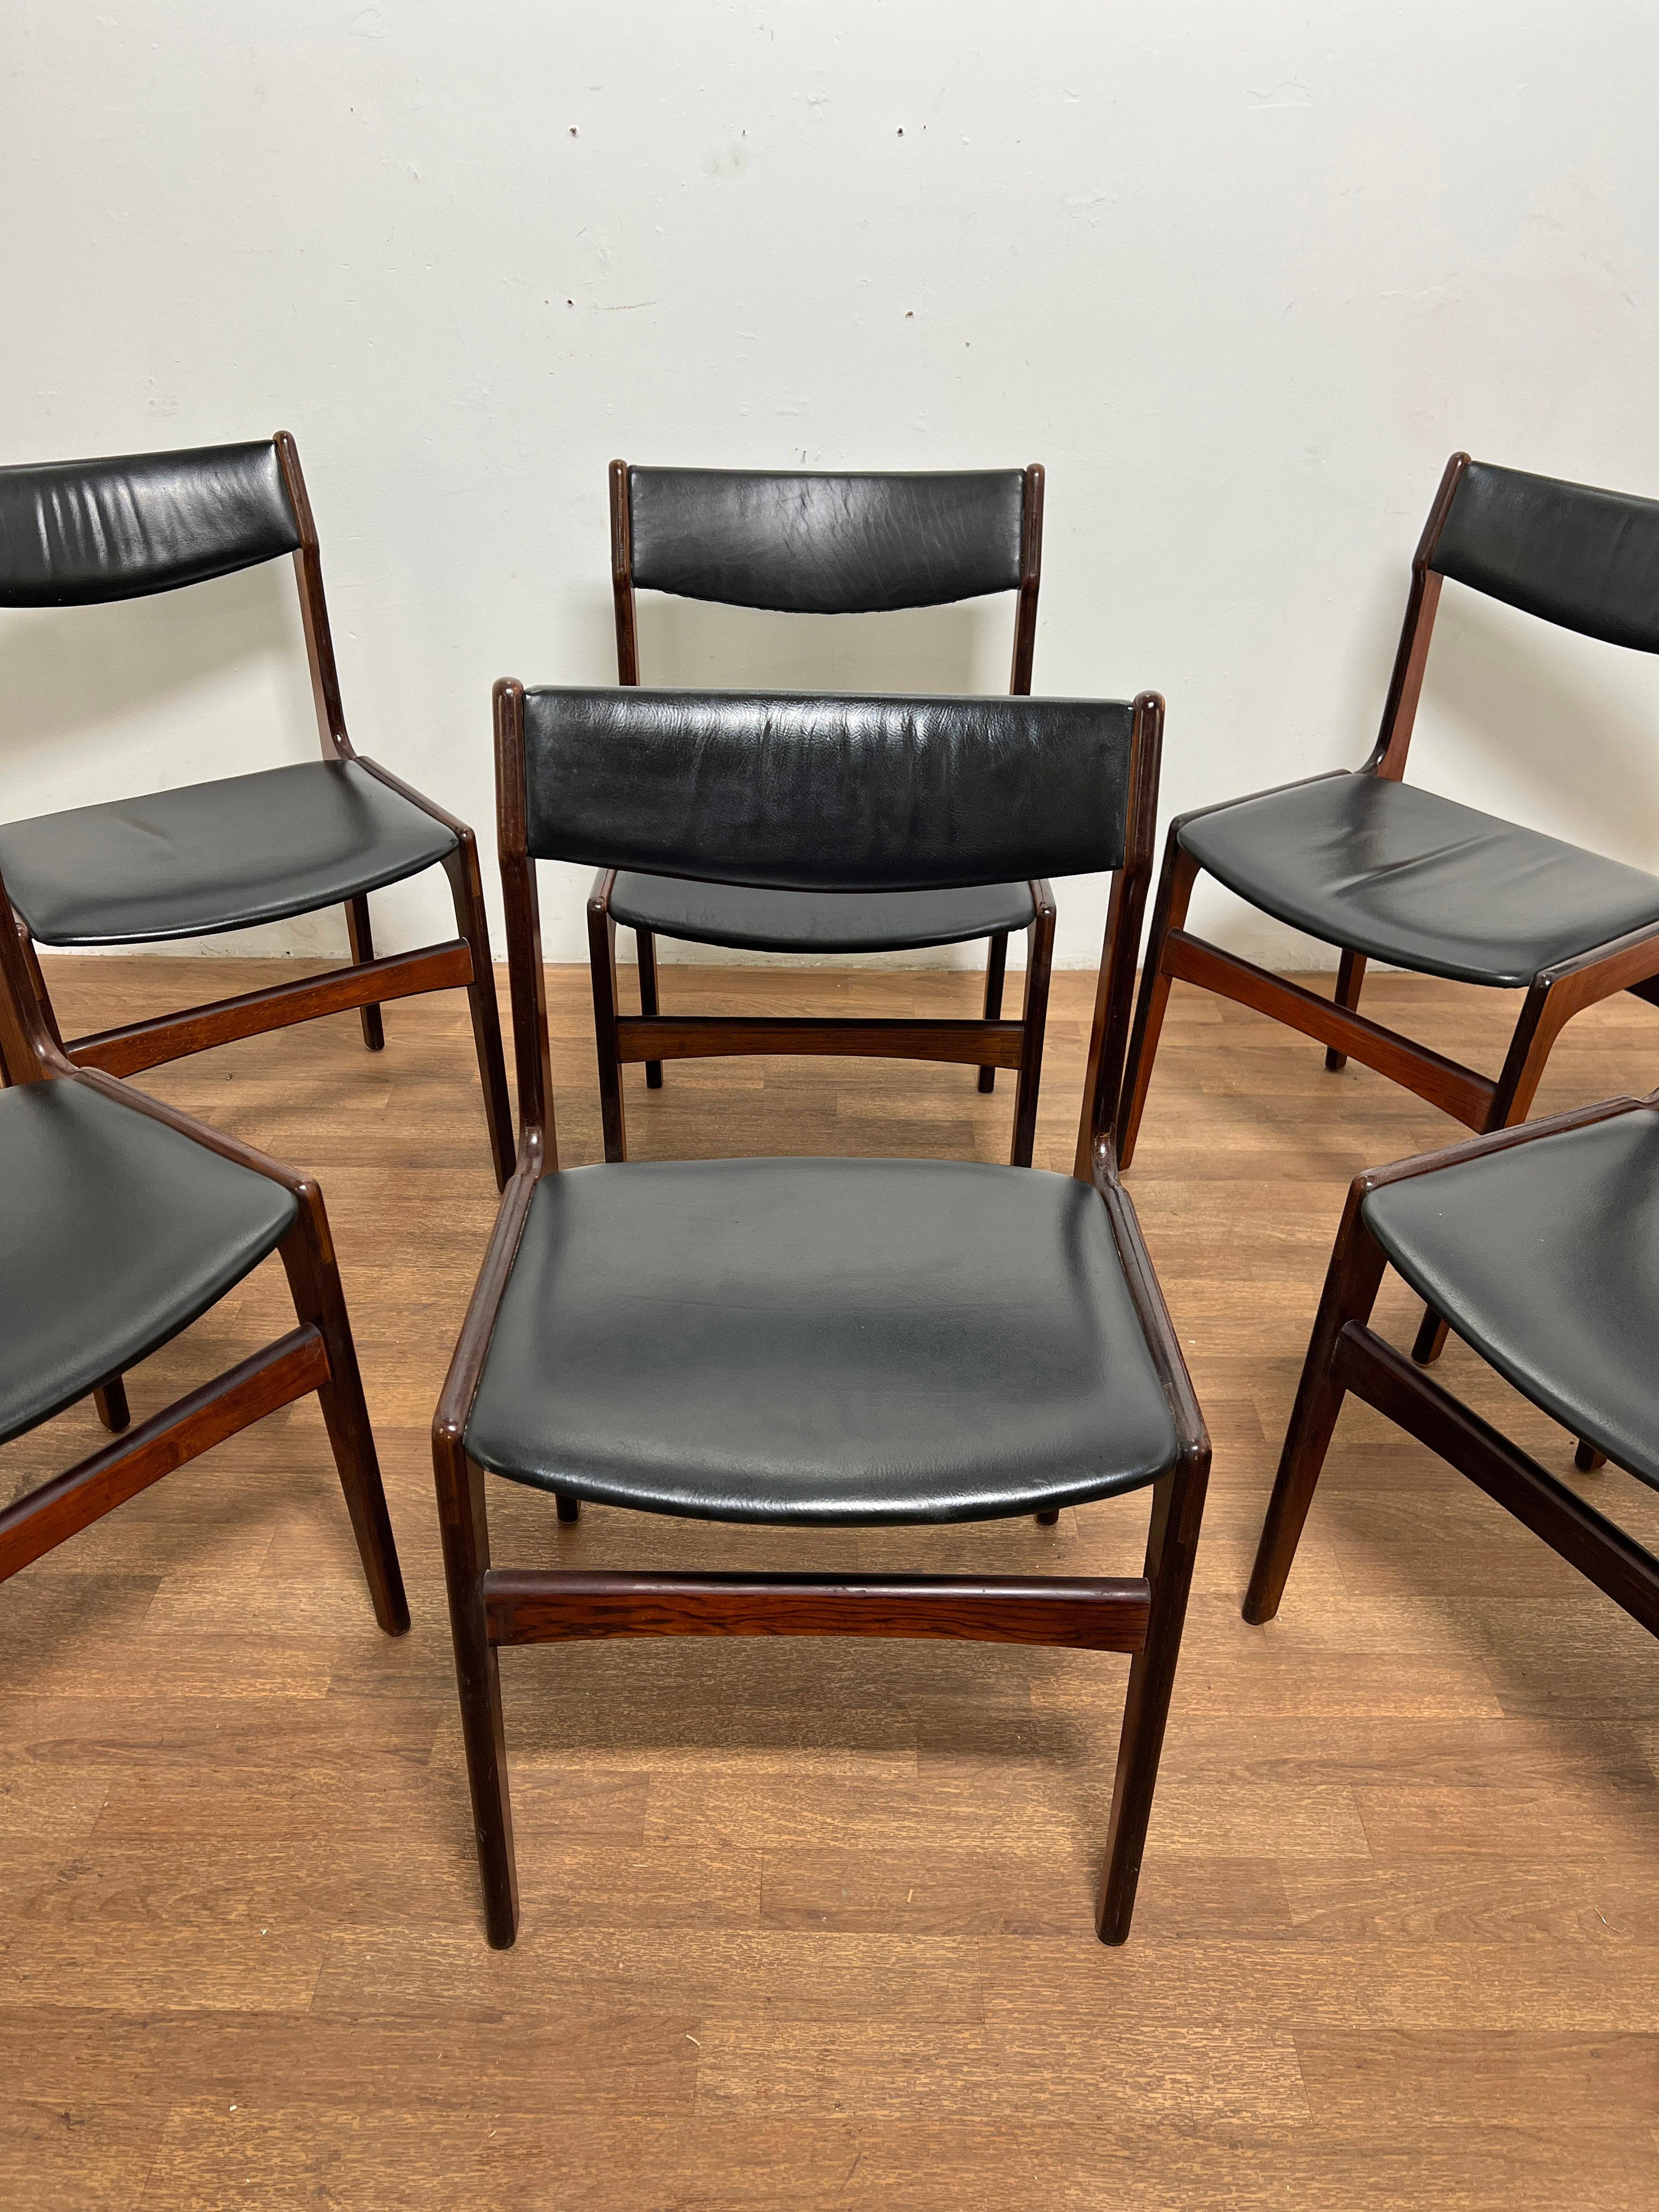 Ensemble de six chaises de salle à manger danoises en bois de rose avec revêtement en cuir d'origine, conçues par Erik Buch pour Oddense Maskinsnedkeri, vers les années 1960.